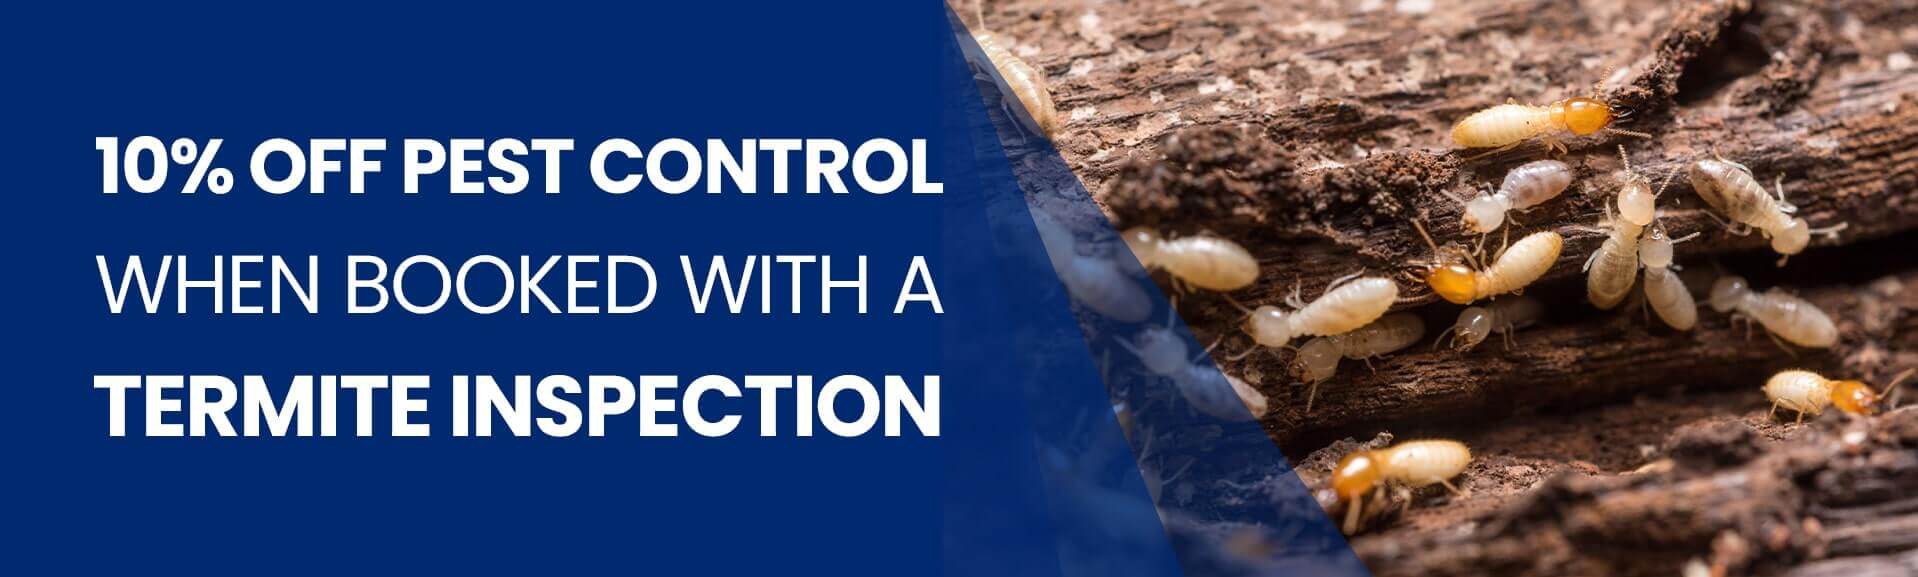 Pest Control Australia